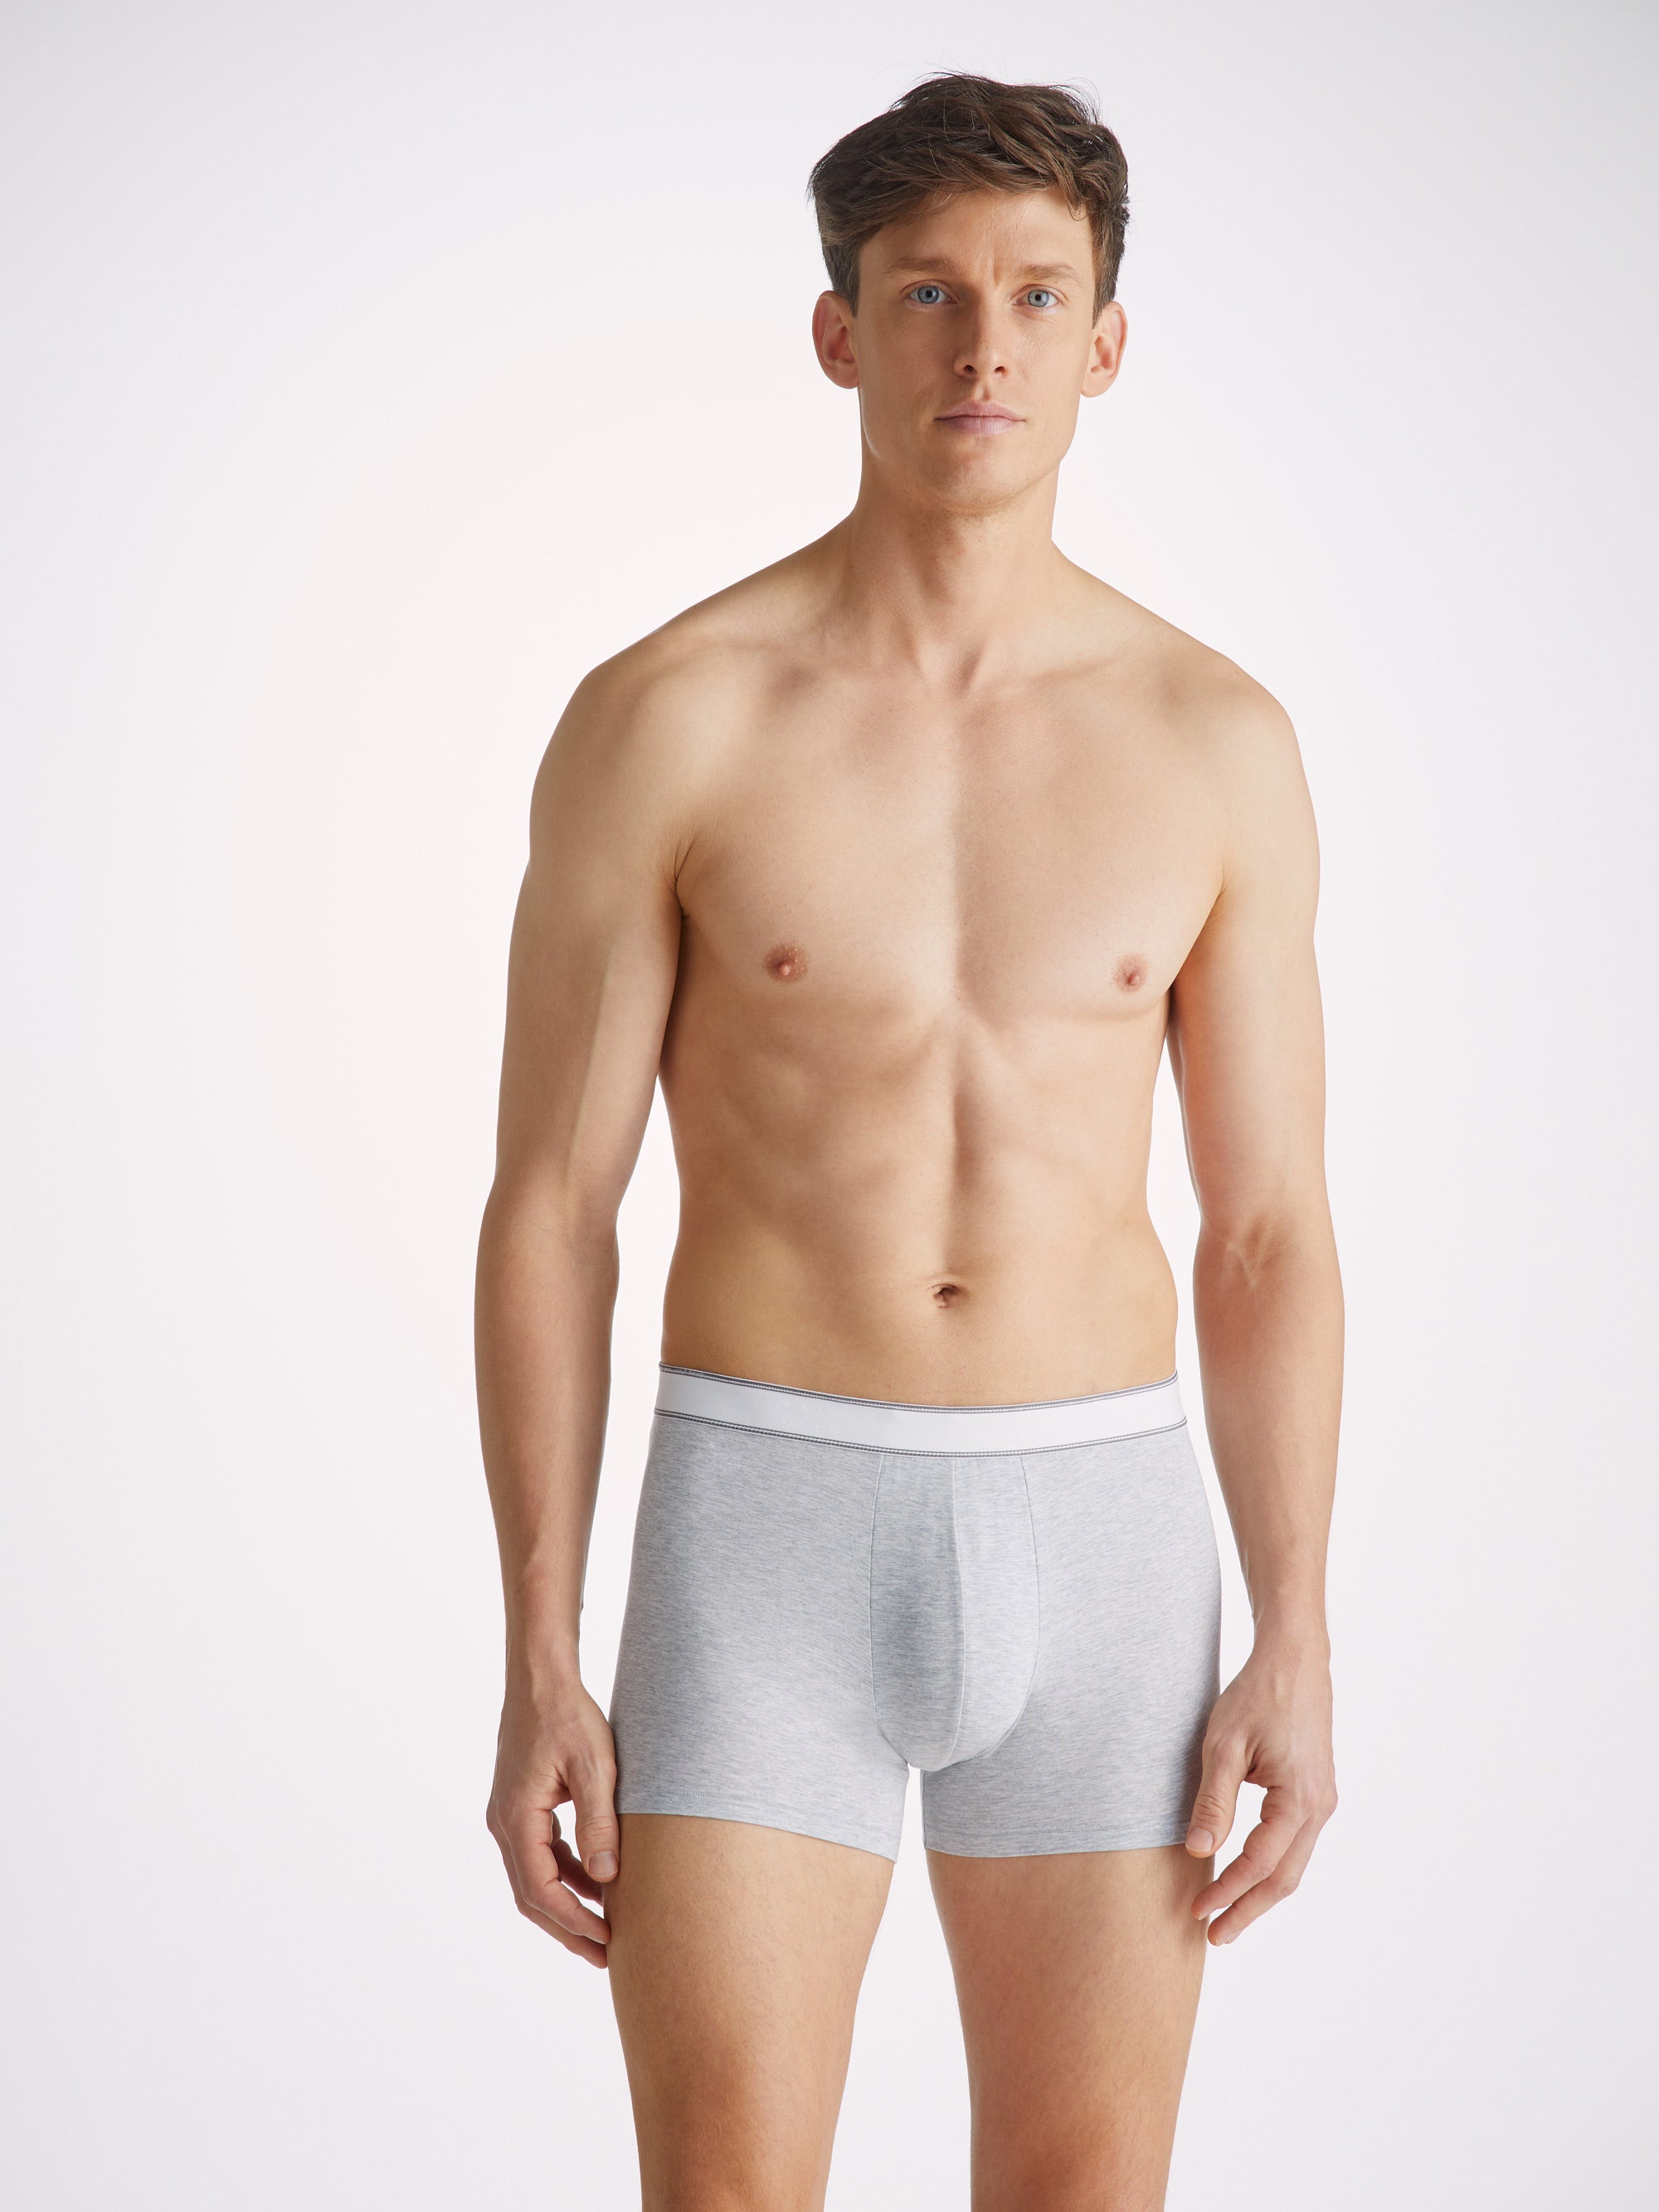 Men's Underwear Australia: Best Boxers, Briefs & More